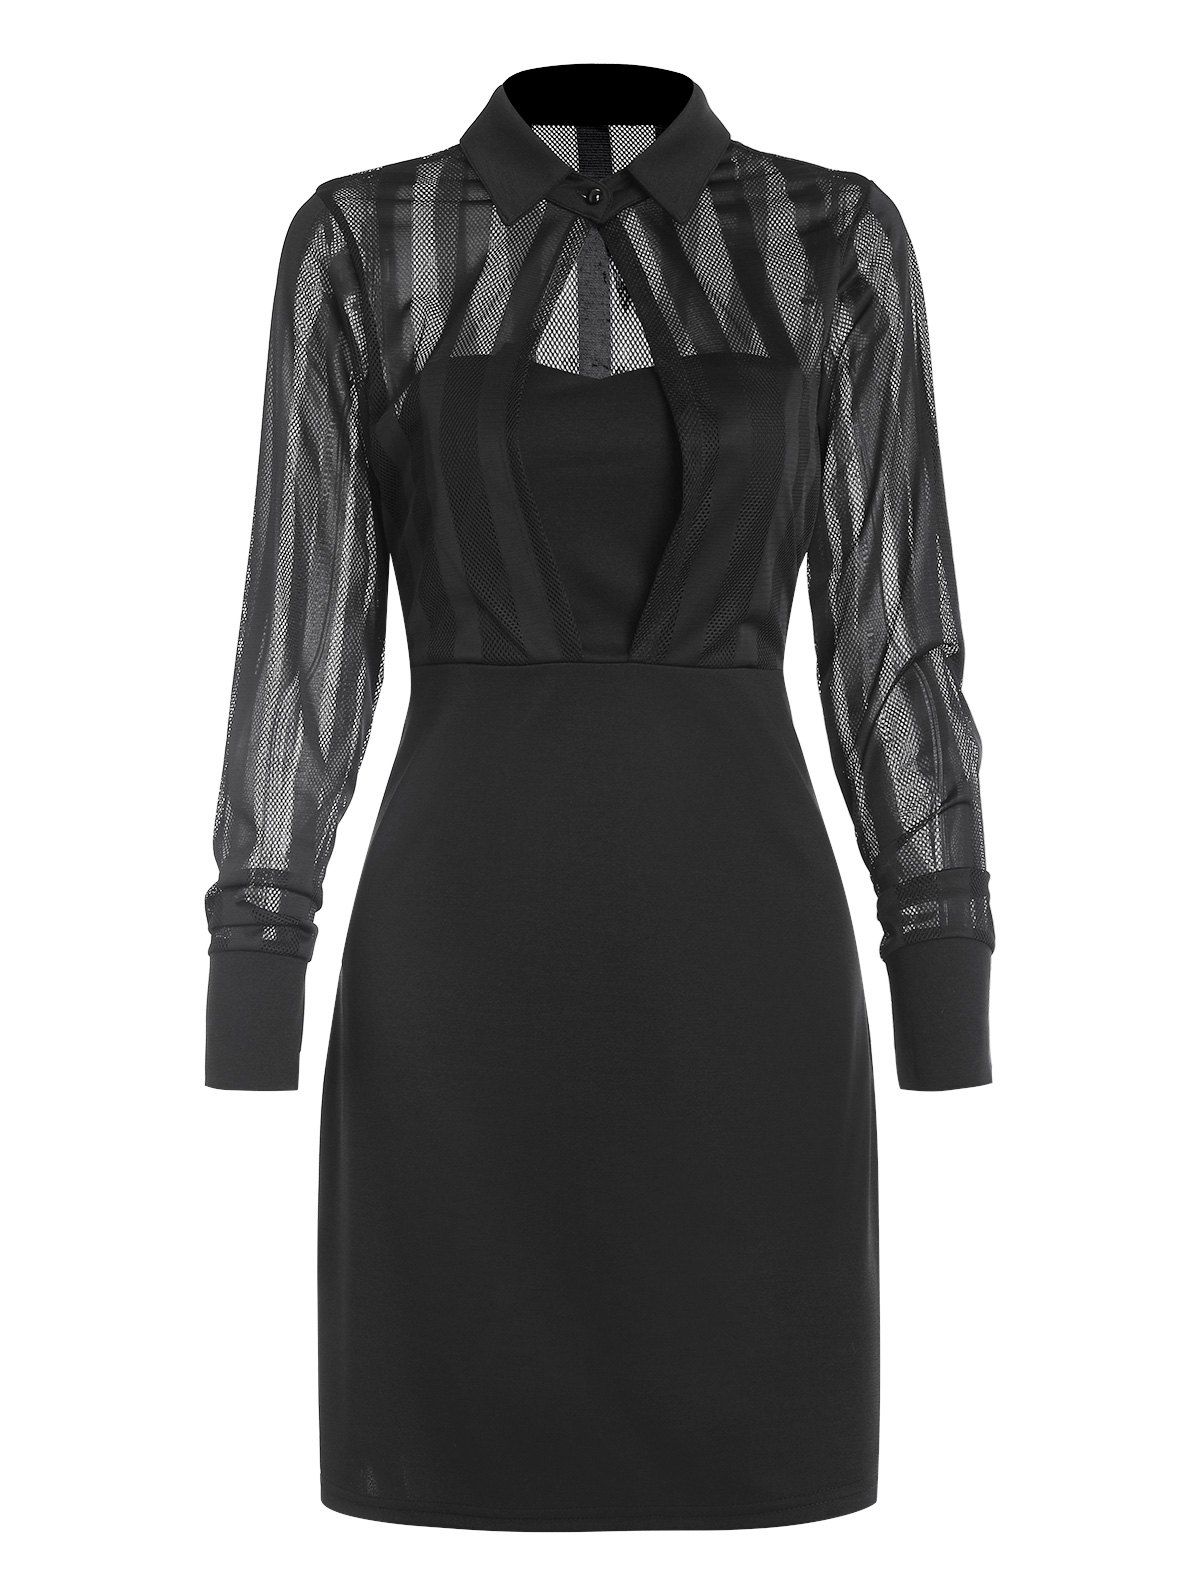 Fishnet Insert Keyhole Cutout Long Sleeve Dress - BLACK XL